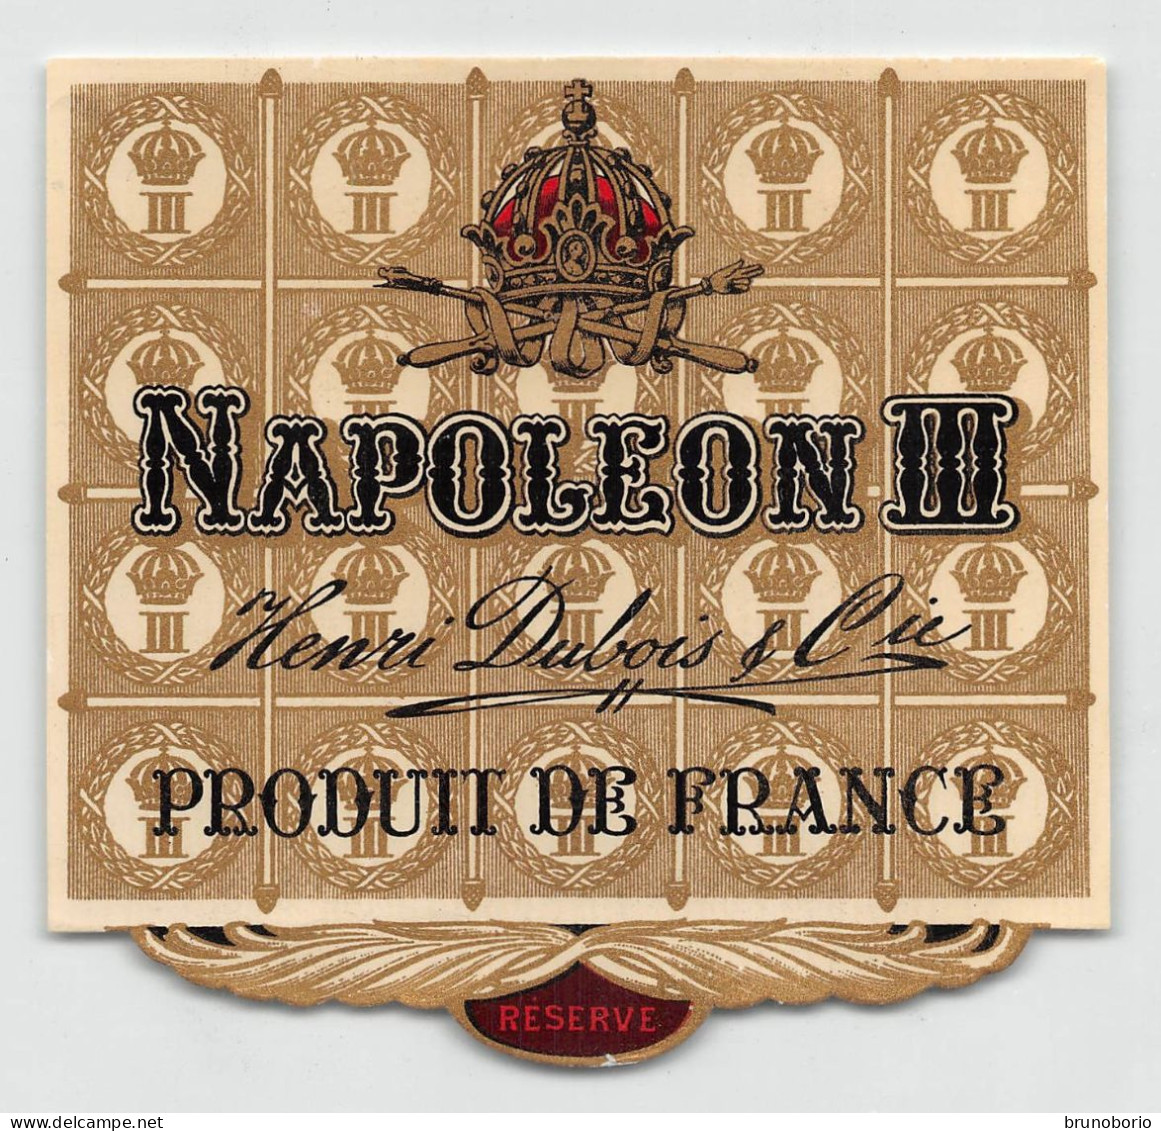 00049 "NAPOLEON III - ENRI DUBOIS & CIE - PRODUIT DE FRANCE" ETICH. ORIG. - Alcohols & Spirits